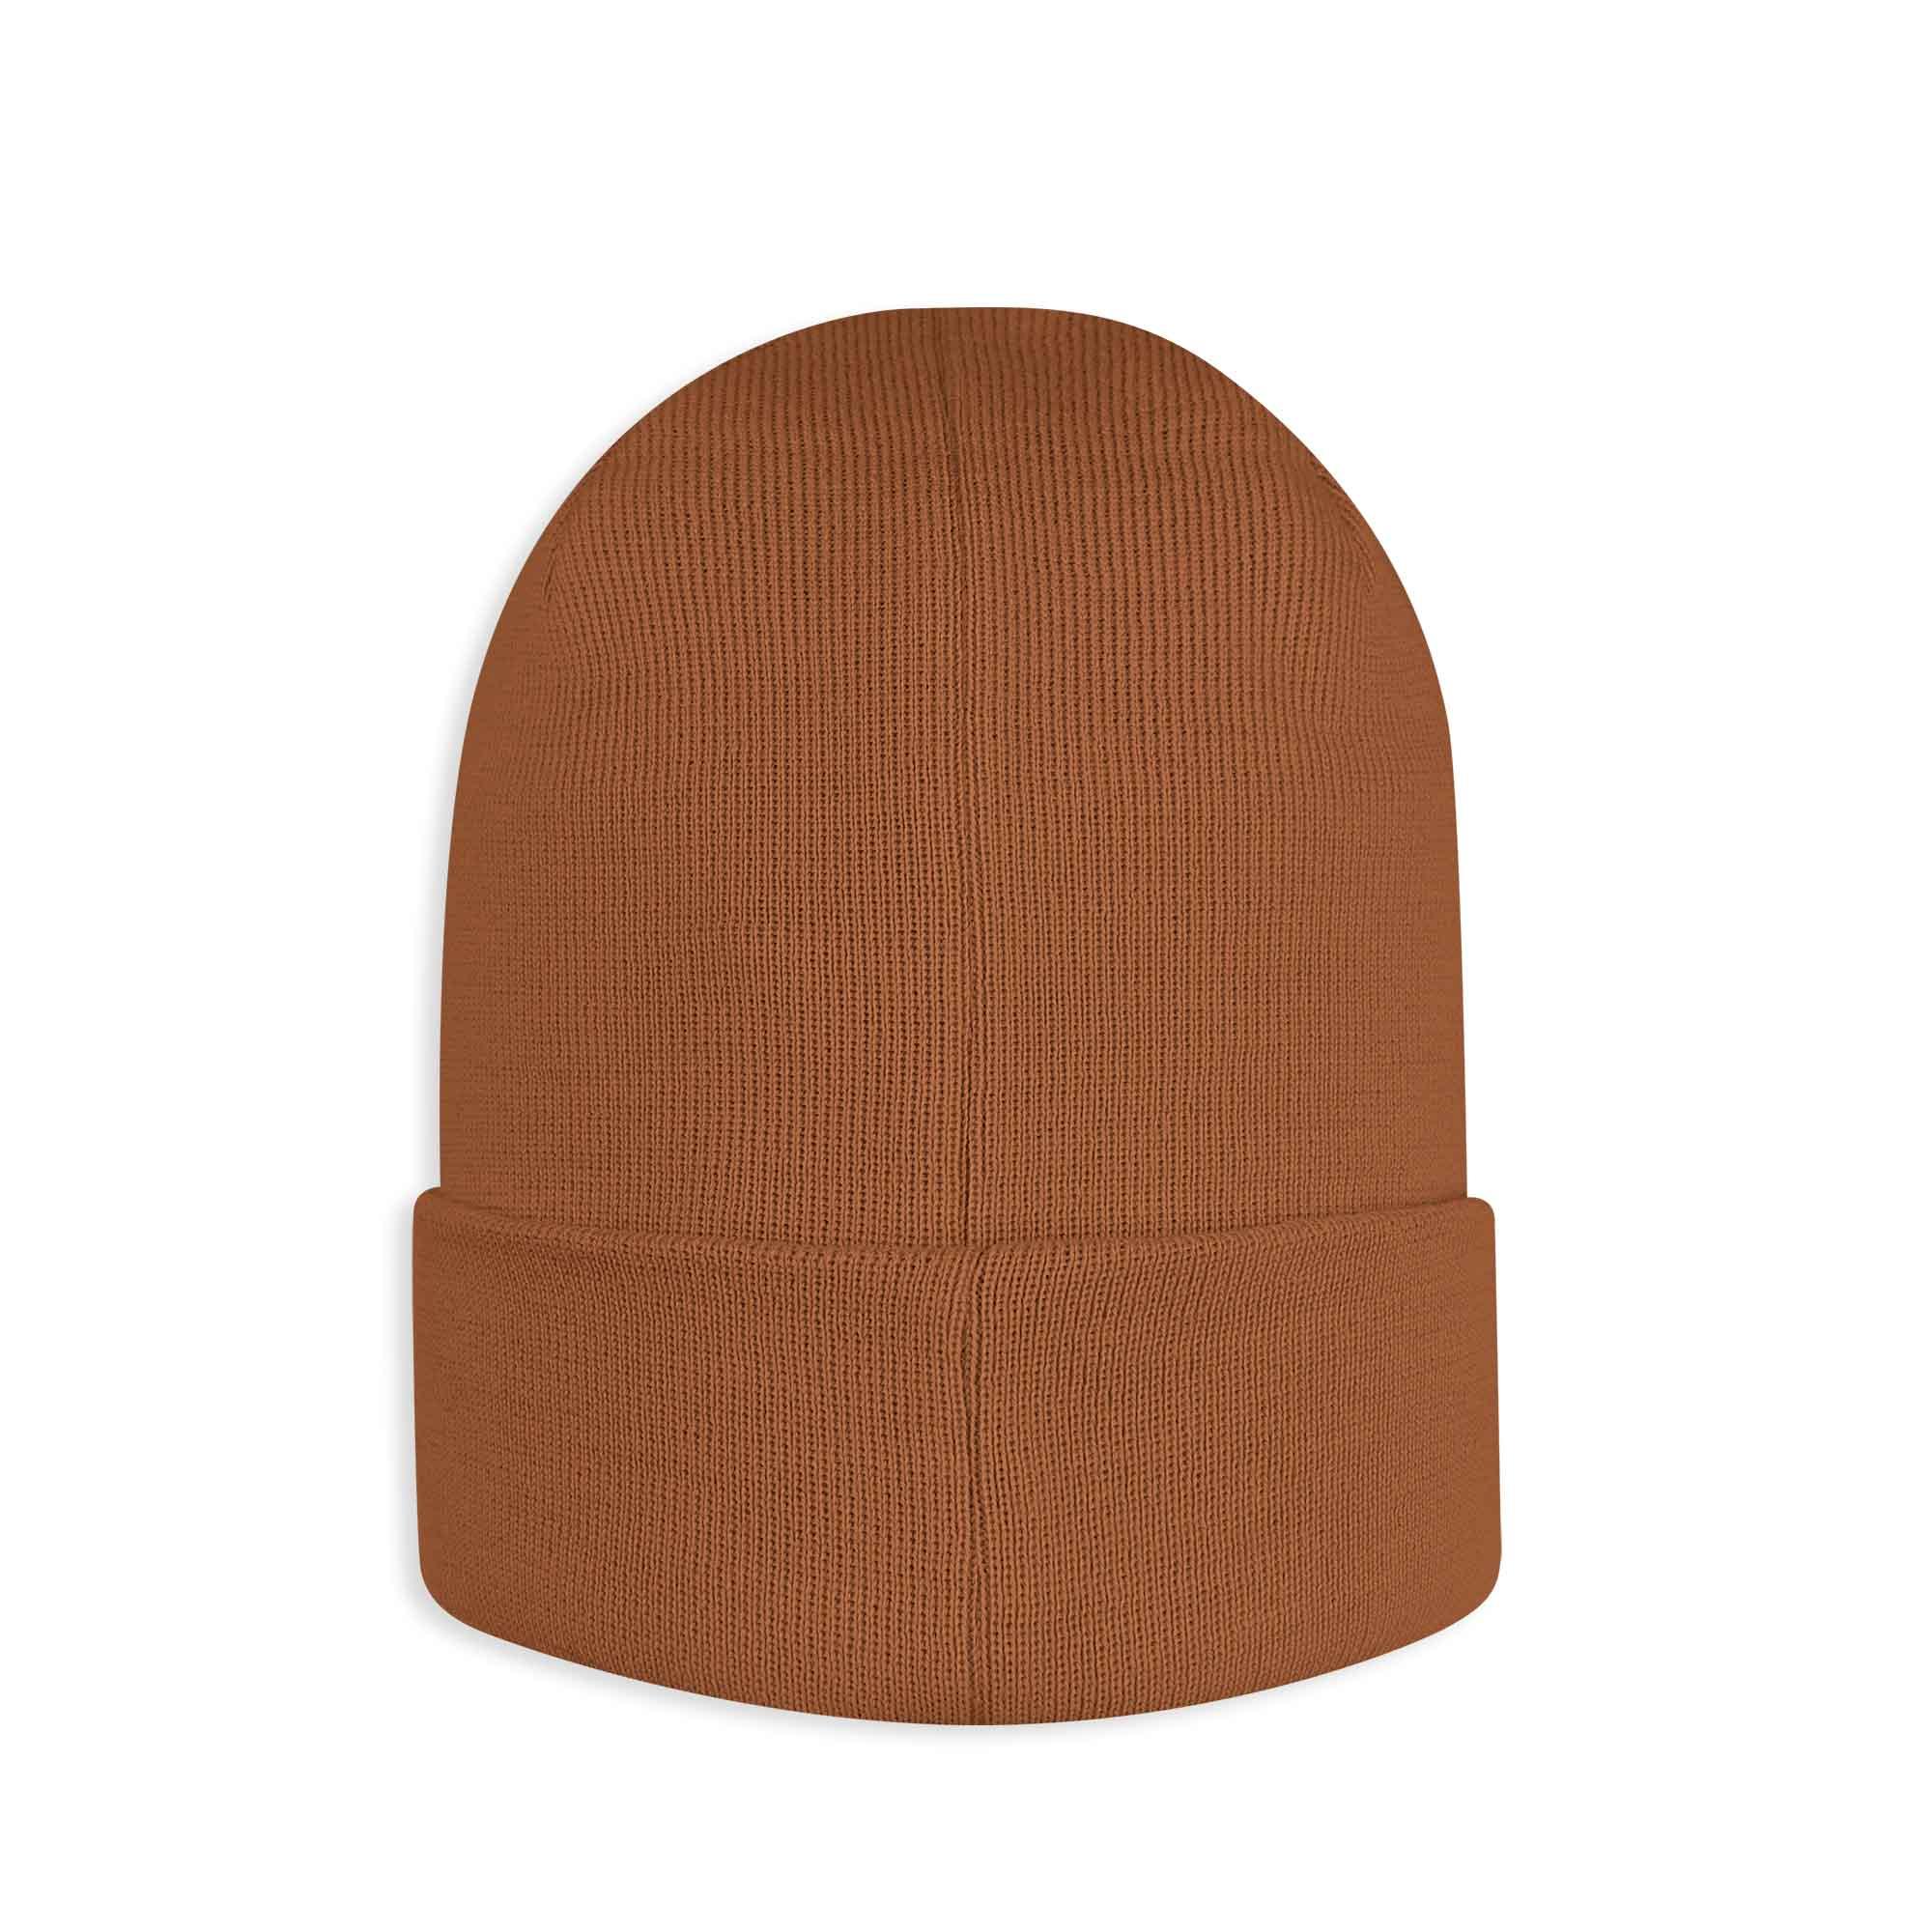 Karmelowa czapka z wełny merino o drobnym splocie